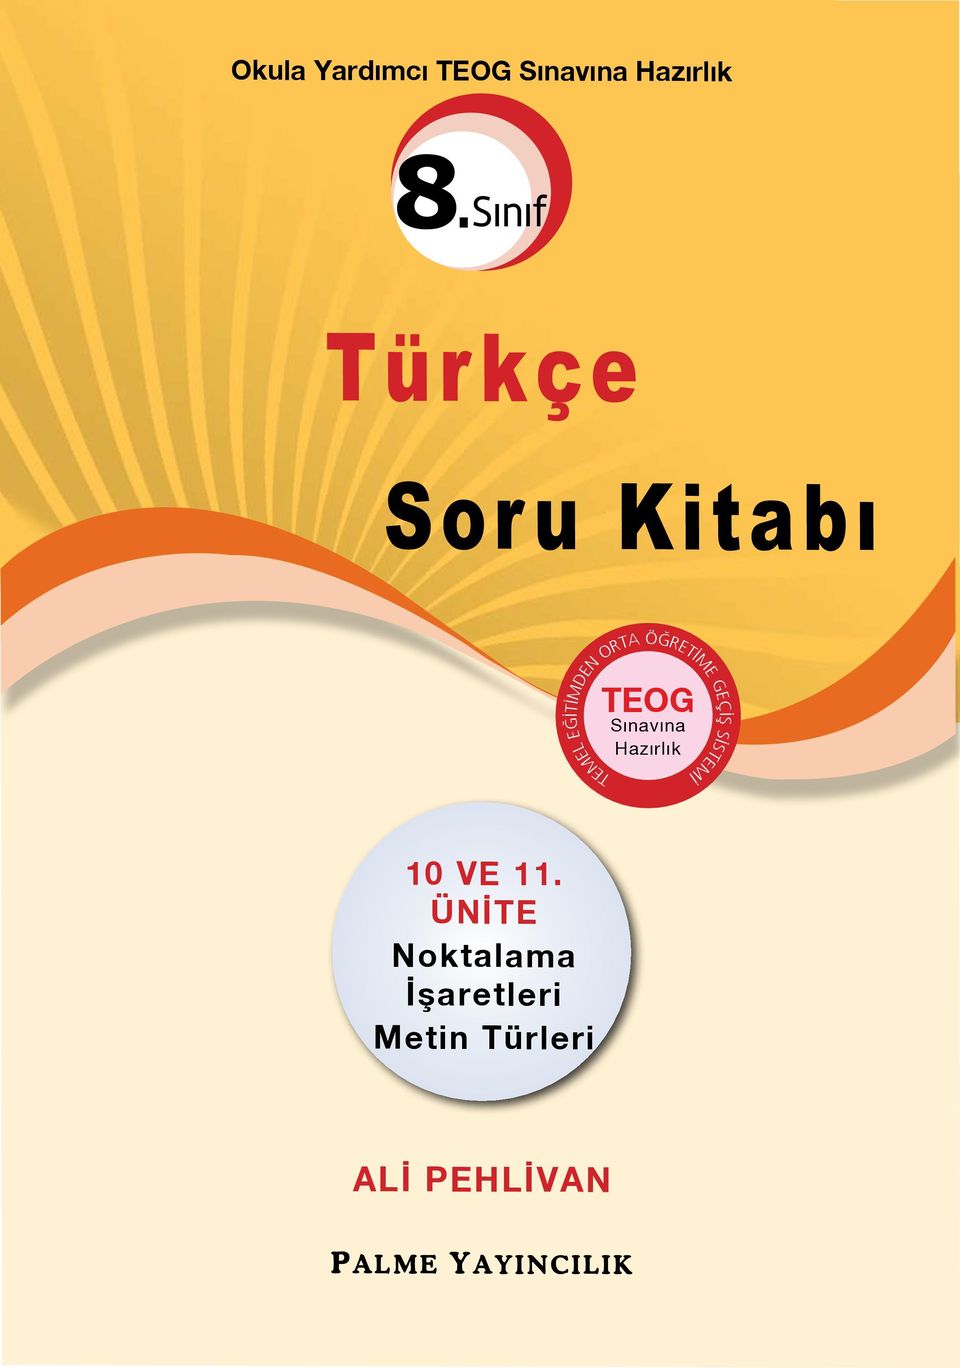 Sınıf Türkçe Soru Kitabı TEOG Sınavına Hazırlık 10